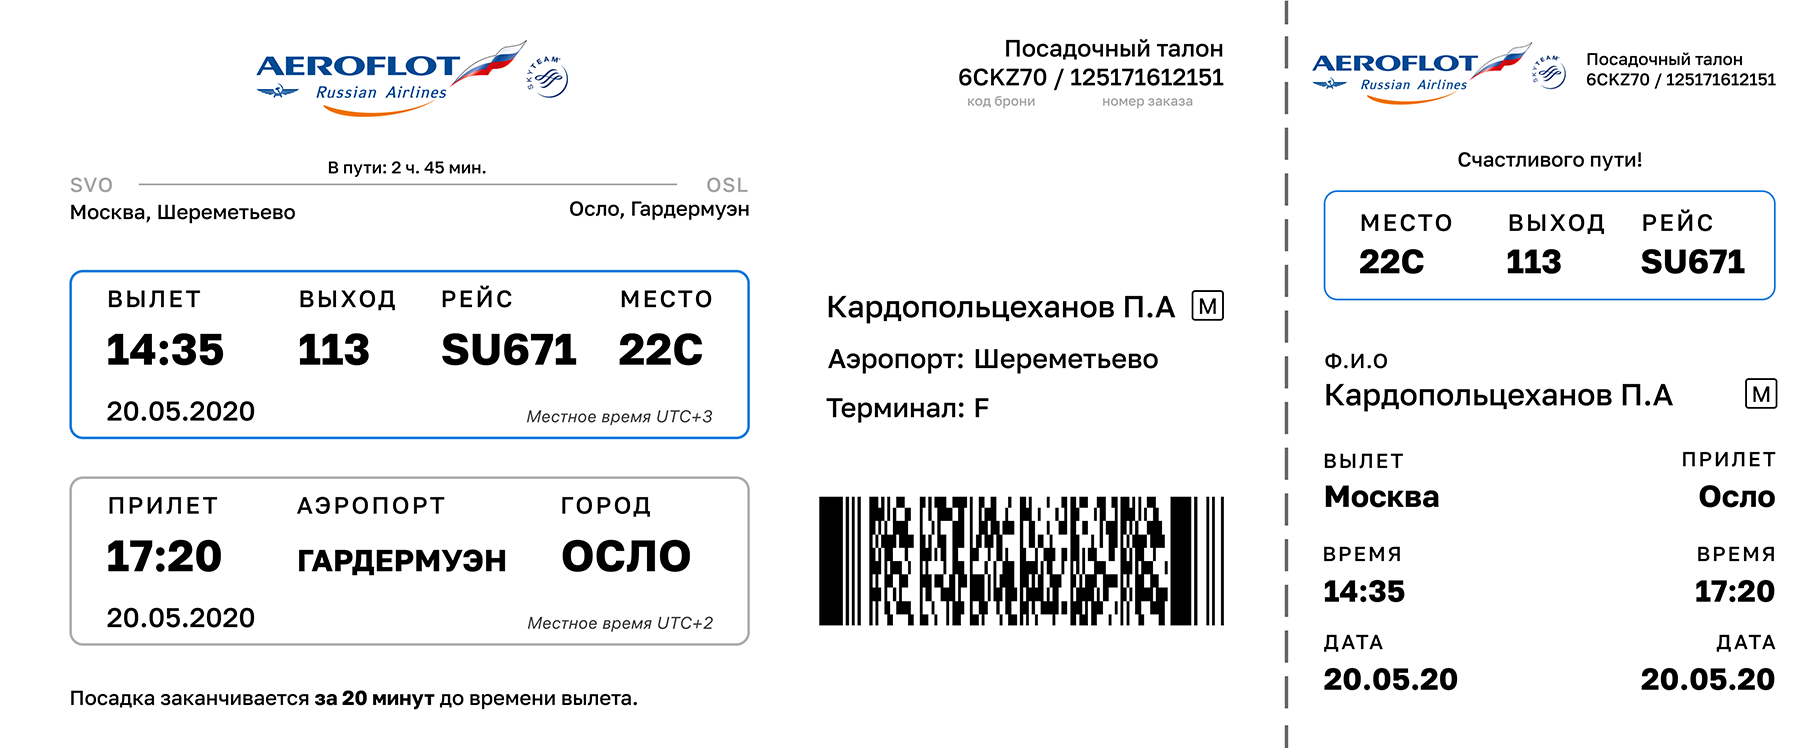 Регистрировать номер билета на рахмат102 рф. Посадочный талон Аэрофлот Москва. Посадочный билет Аэрофлот. Посадочный талон Аэрофлот Шереметьево. Посадочный талон Аэрофлот пример.